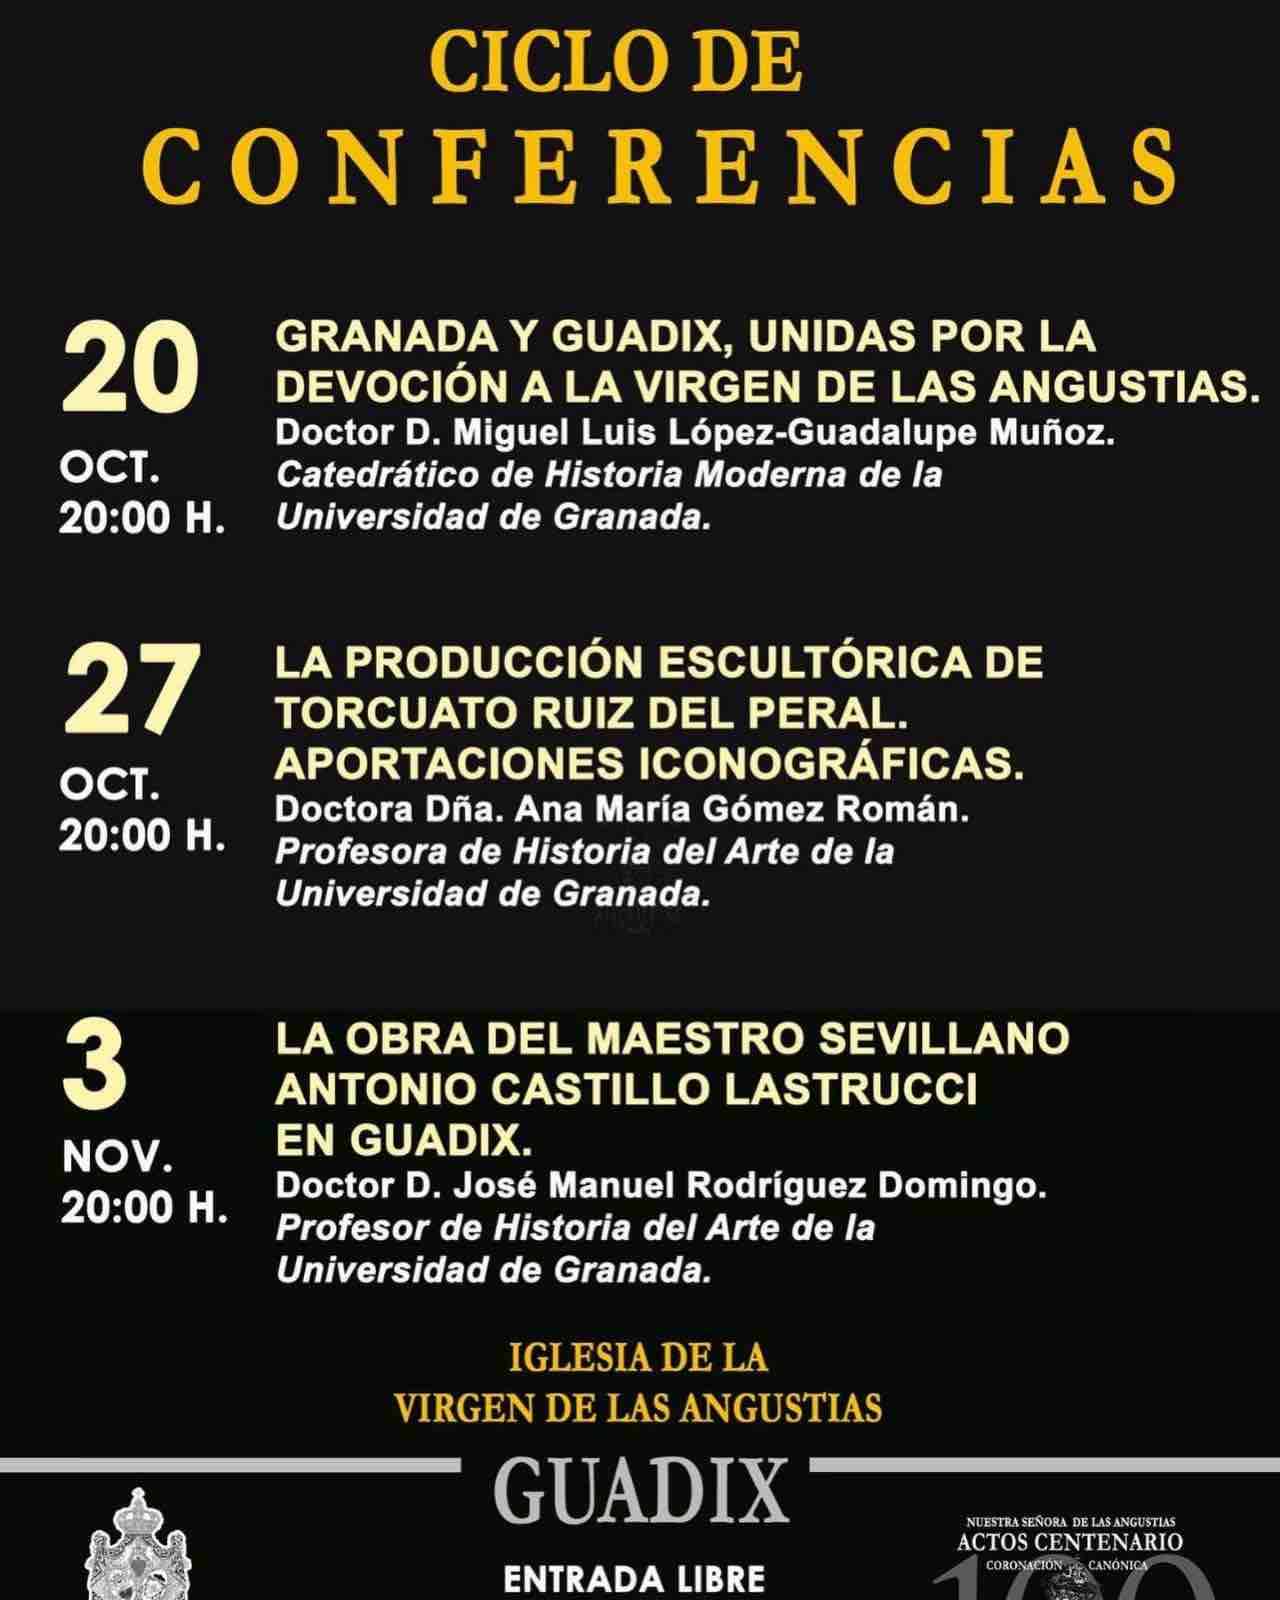 Conferencia "La producción escultórica de Torcuato Ruiz del Peral. Aportaciones iconográficas" a cargo de la Dra. Ana María Gómez Román.